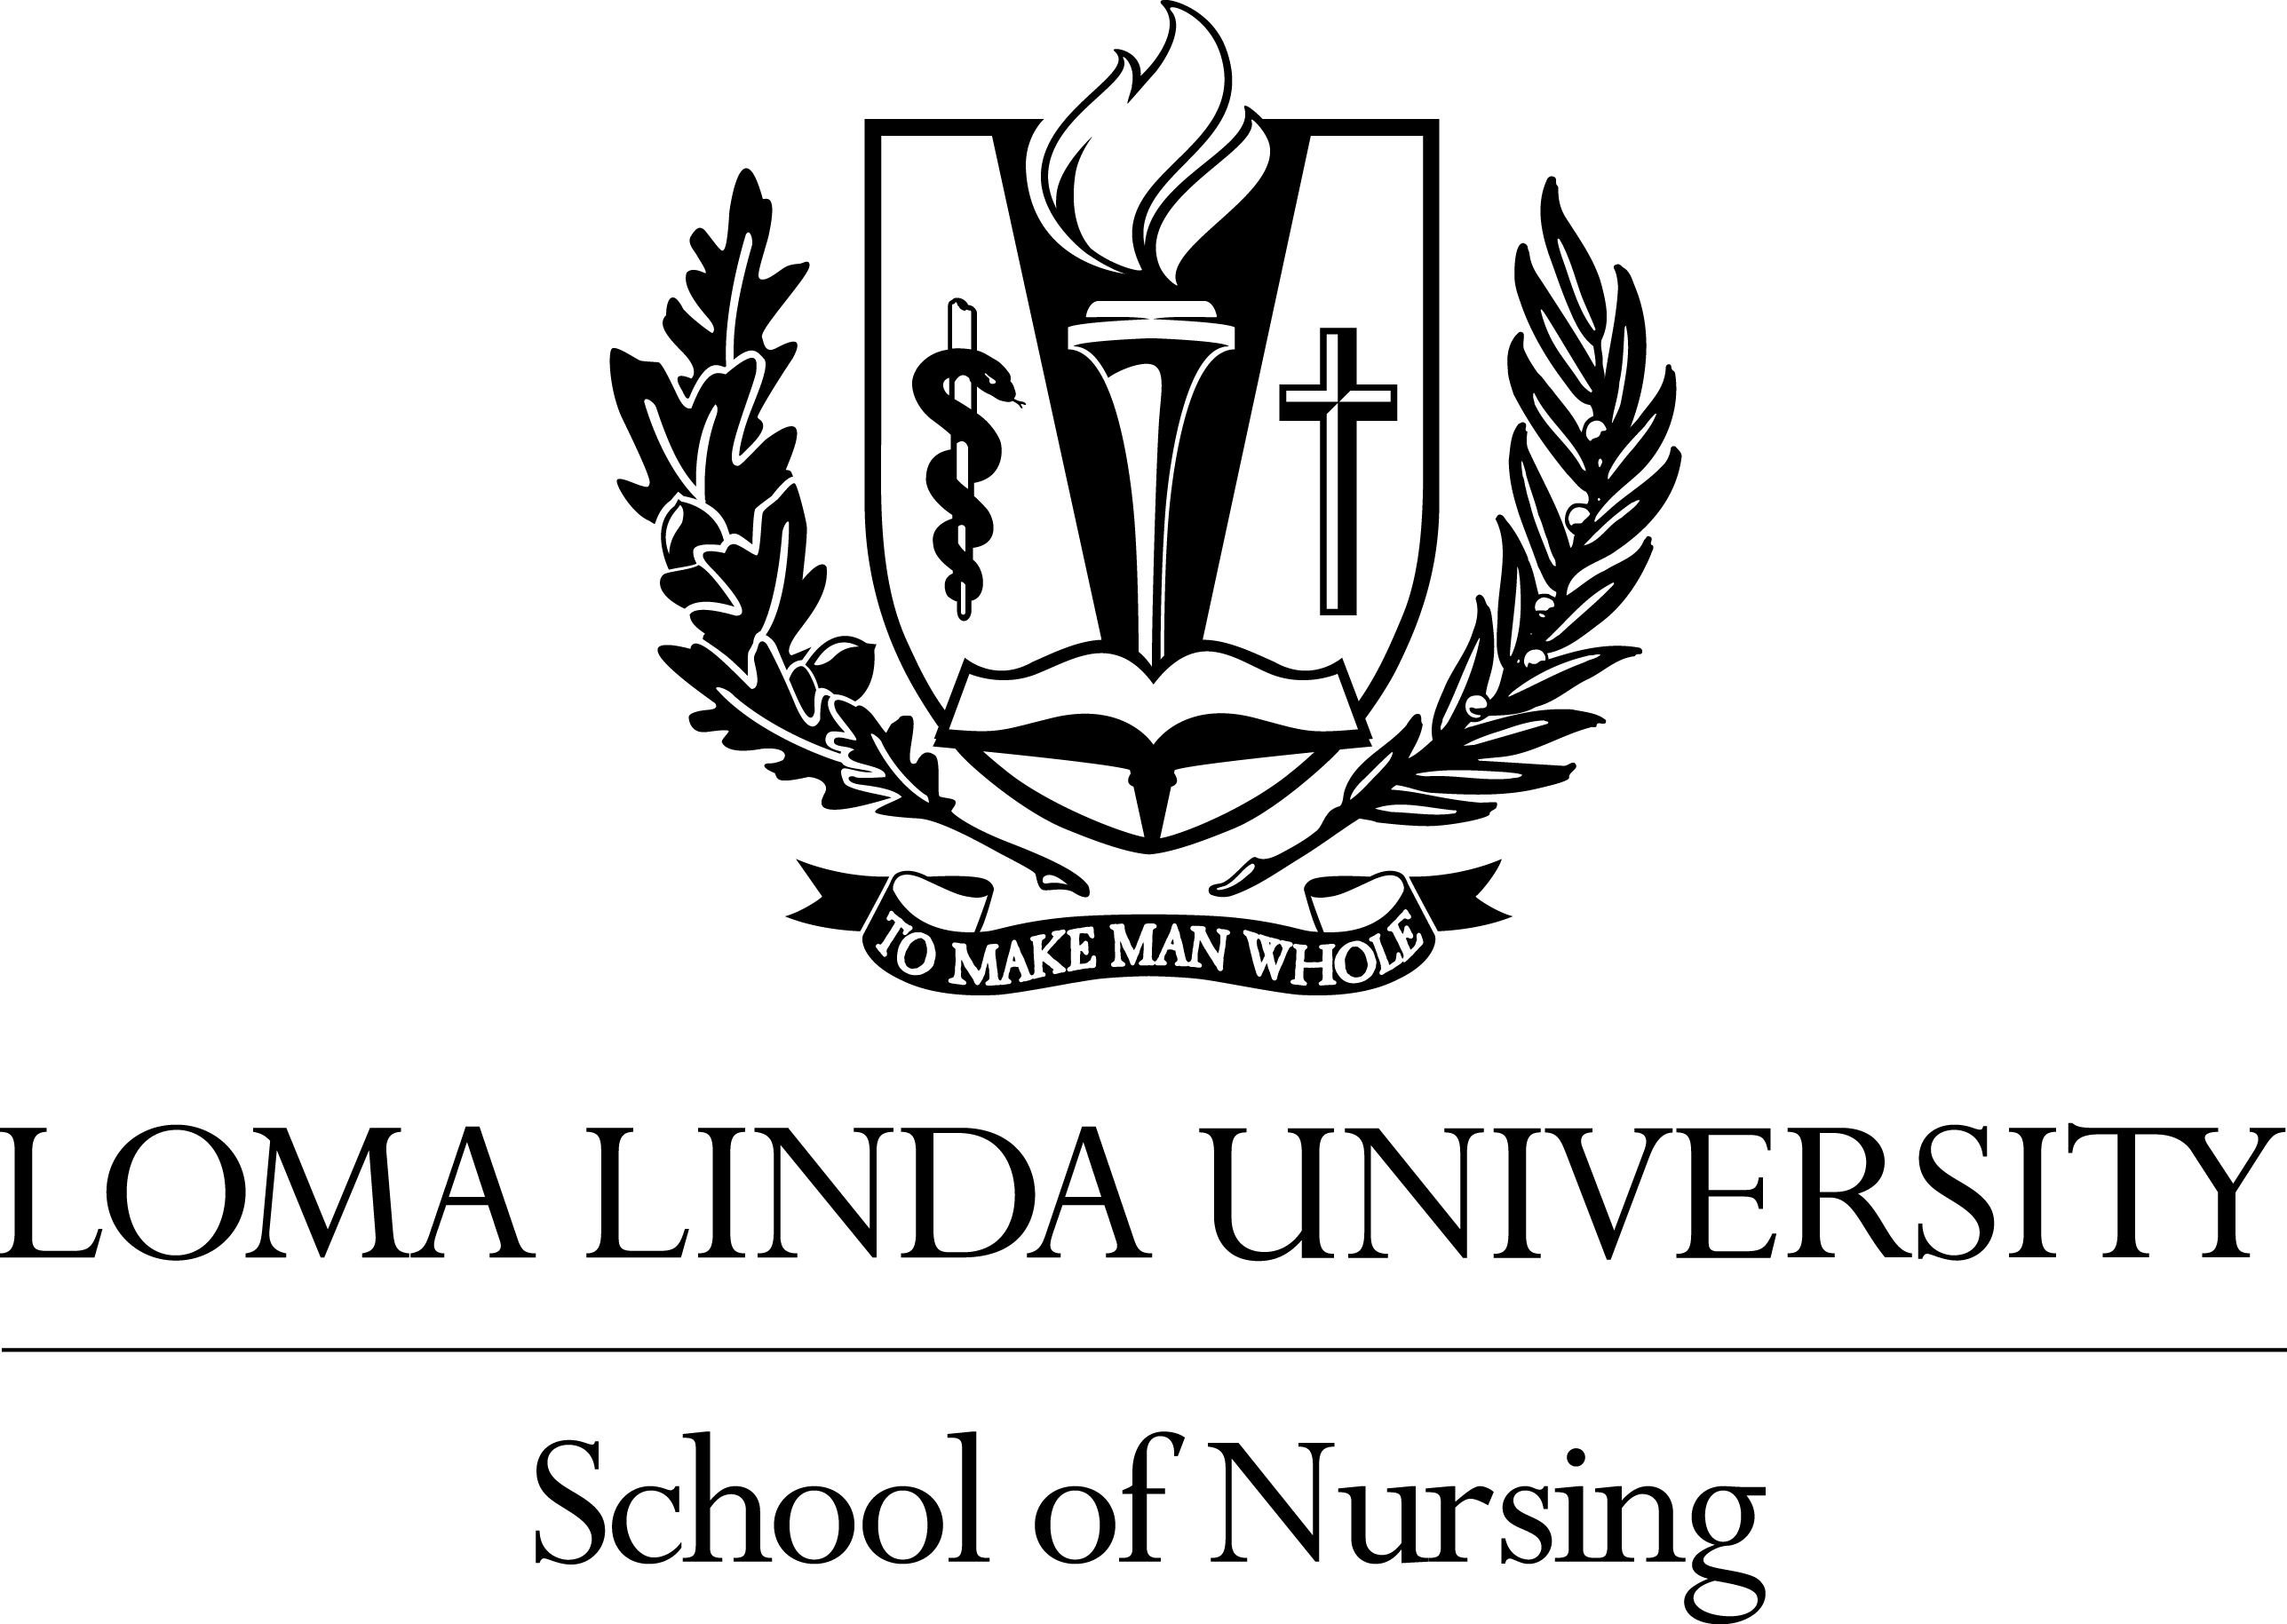 Linda Logo - Logos | School of Nursing | Loma Linda University